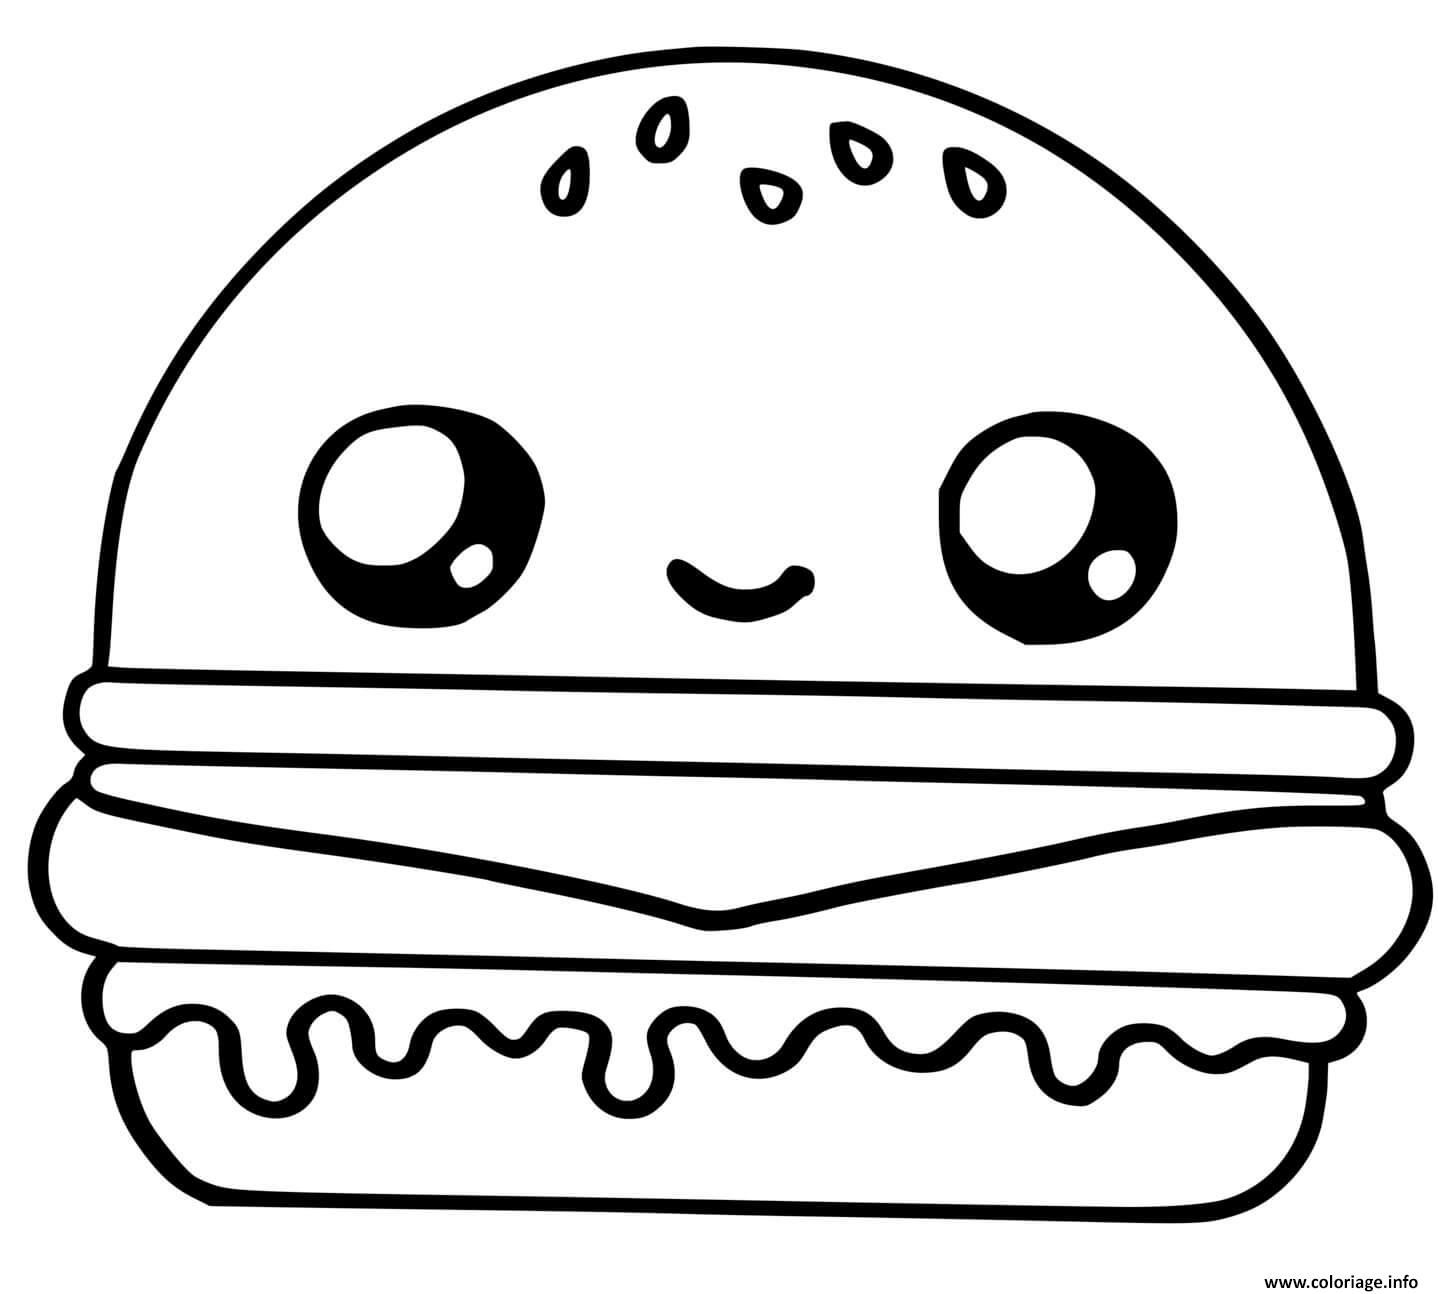 Coloriage Cute Hamburger Food Dessin Kawaii Dessin à Imprimer